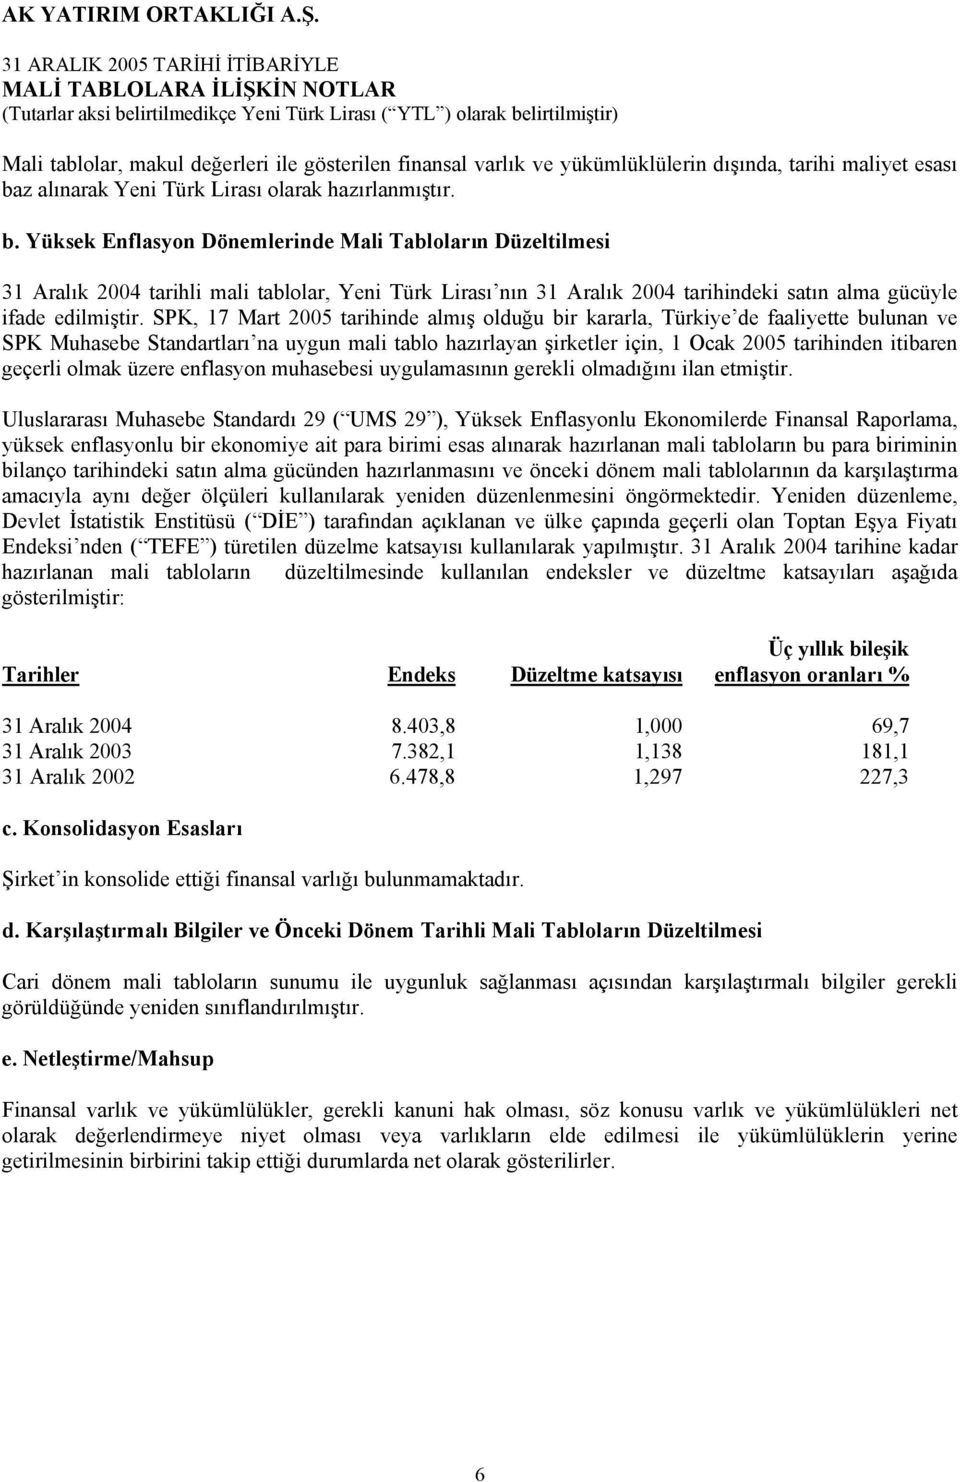 Yüksek Enflasyon Dönemlerinde Mali Tabloların Düzeltilmesi 31 Aralık 2004 tarihli mali tablolar, Yeni Türk Lirası nın 31 Aralık 2004 tarihindeki satın alma gücüyle ifade edilmiştir.